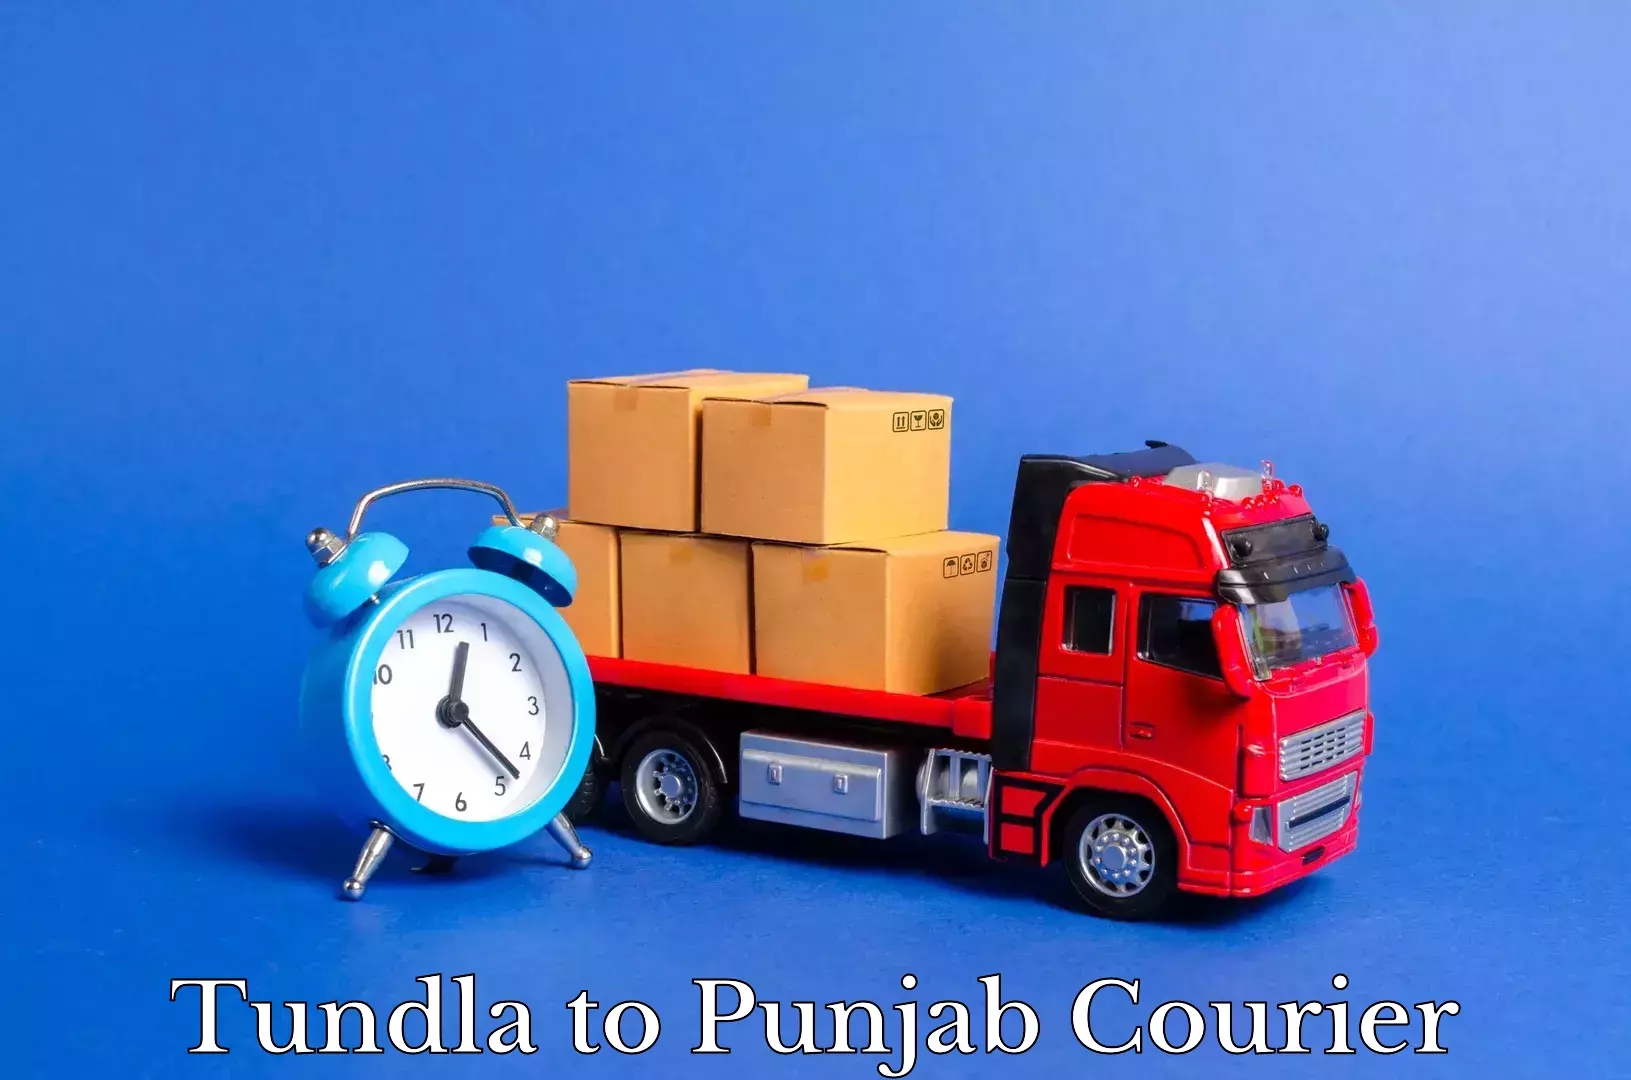 Trusted furniture movers Tundla to Central University of Punjab Bathinda